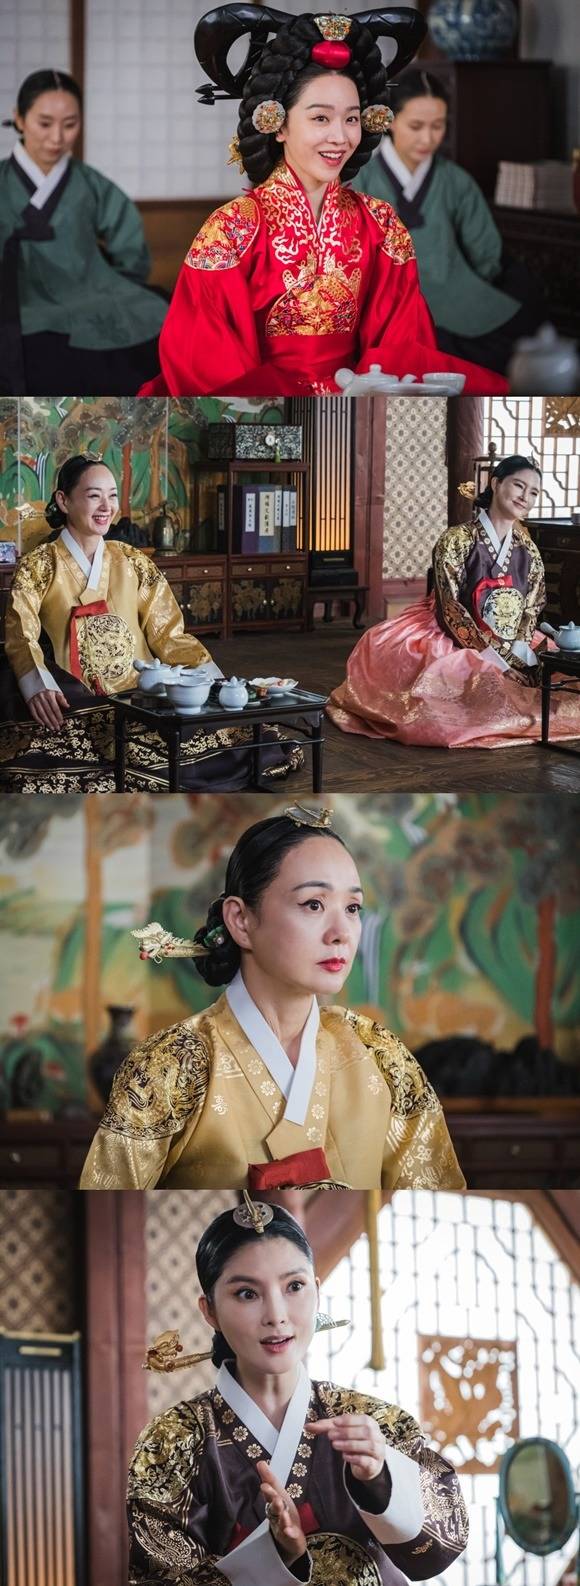 철인왕후가 궁중에서의 시월드 이야기를 펼친다. 제작진은 권력을 쥔 왕가 여인들의 신경전이 코믹과 스릴을 넘나들 예정이라며 자신감을 내비쳤다. /tvN 제공